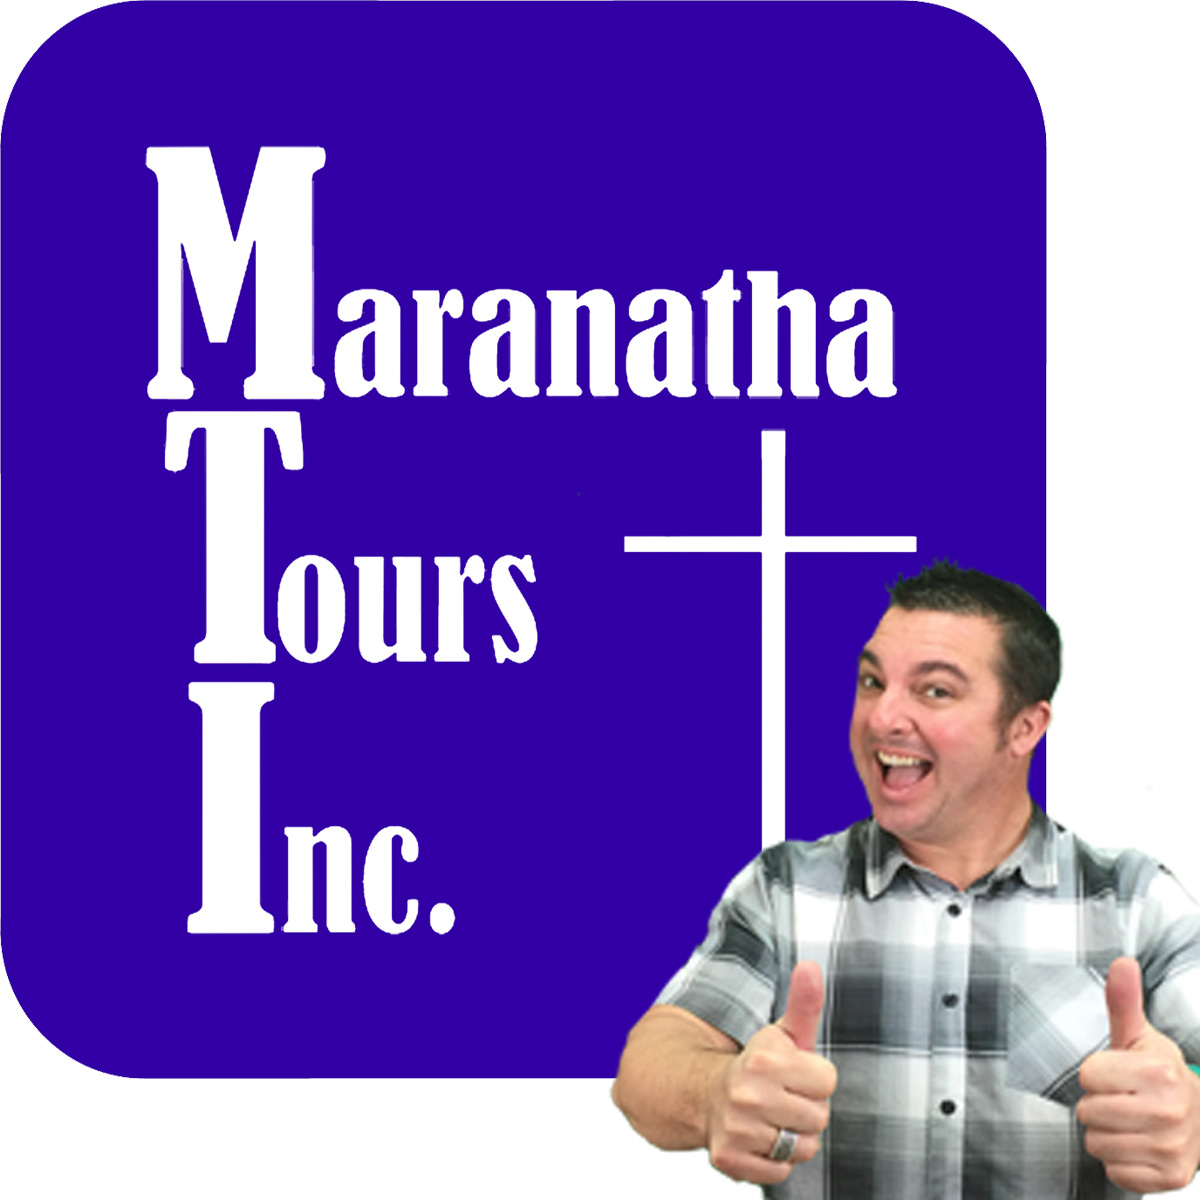 MaranathaTours.com